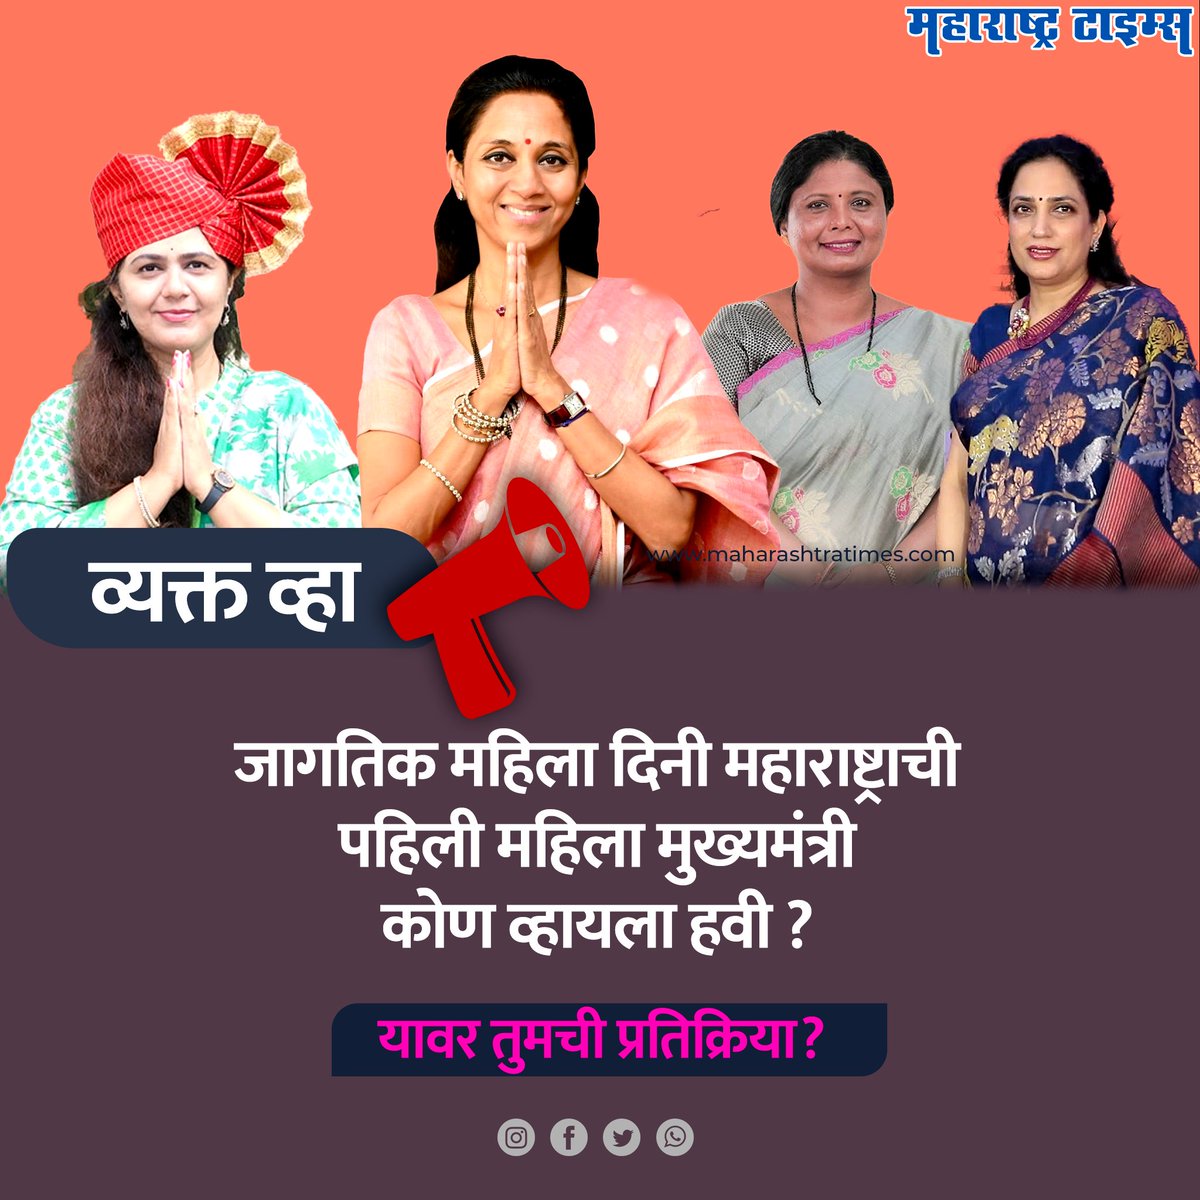 जागतिक महिला दिनी व्यक्त करा तुमचे मत ! महाराष्ट्राची पहिली महिला मुख्यमंत्री कोण व्हायला हवी ? काय वाटते तुम्हाला ? #जागतिकमहिलादिन2023 #मटासुपरवूमन #महिलादिनविशेष2023 #InternationalWomensDay2023 #MataSuperWoman